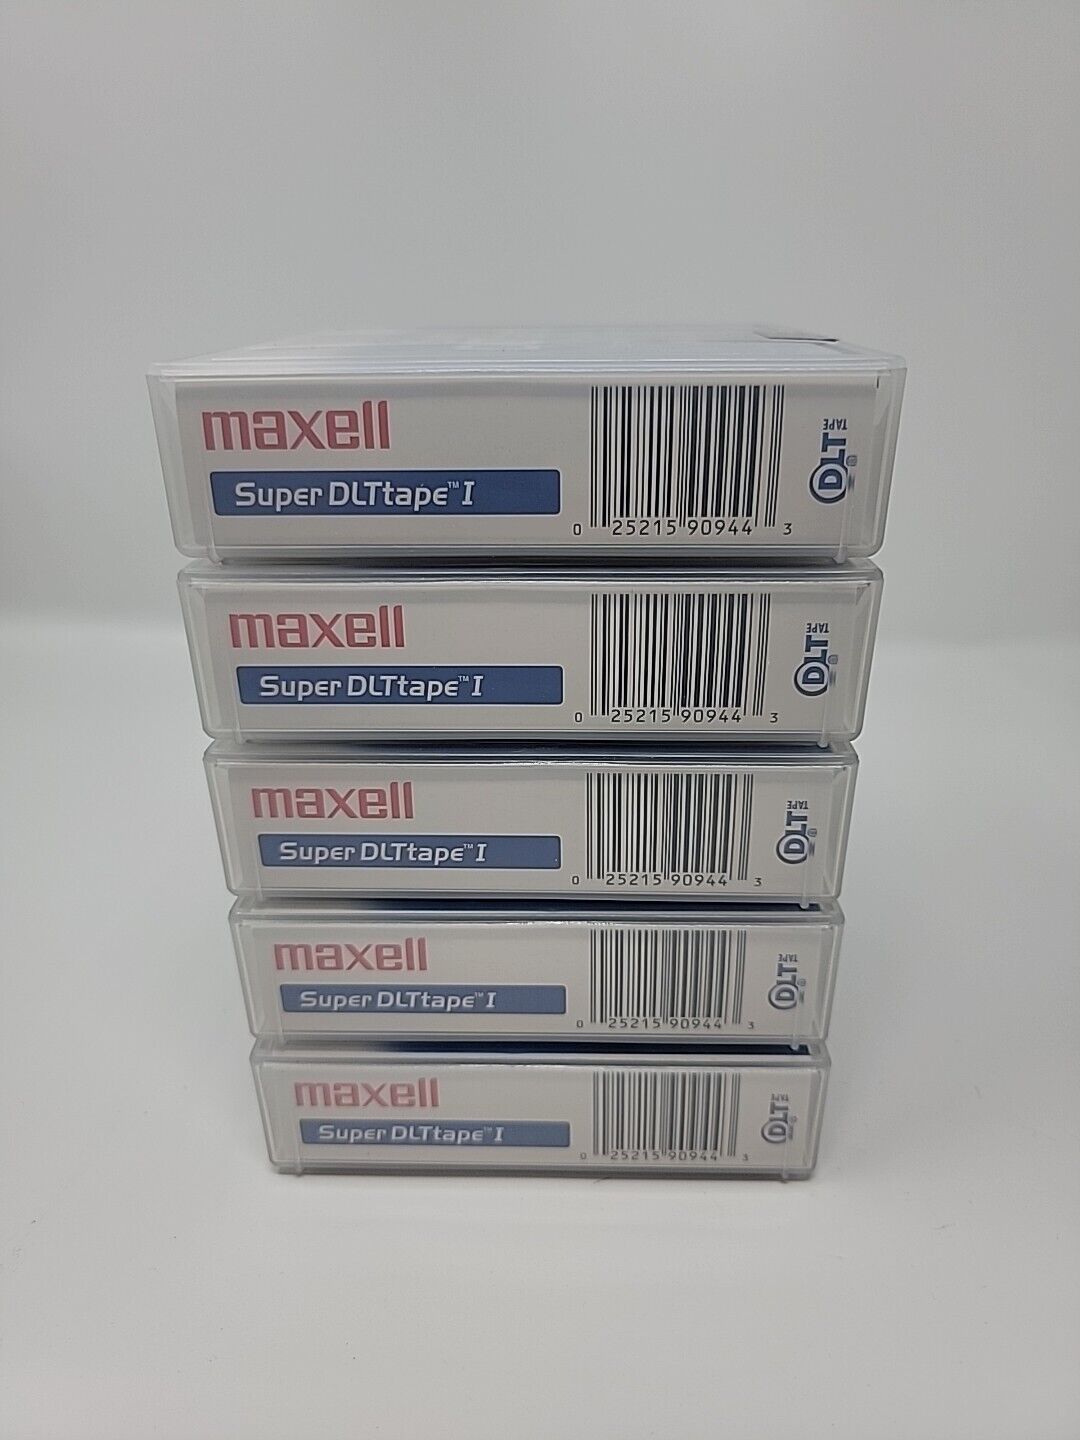 New Maxell Super DLT Tape I 160 GB/320 GB 1/2